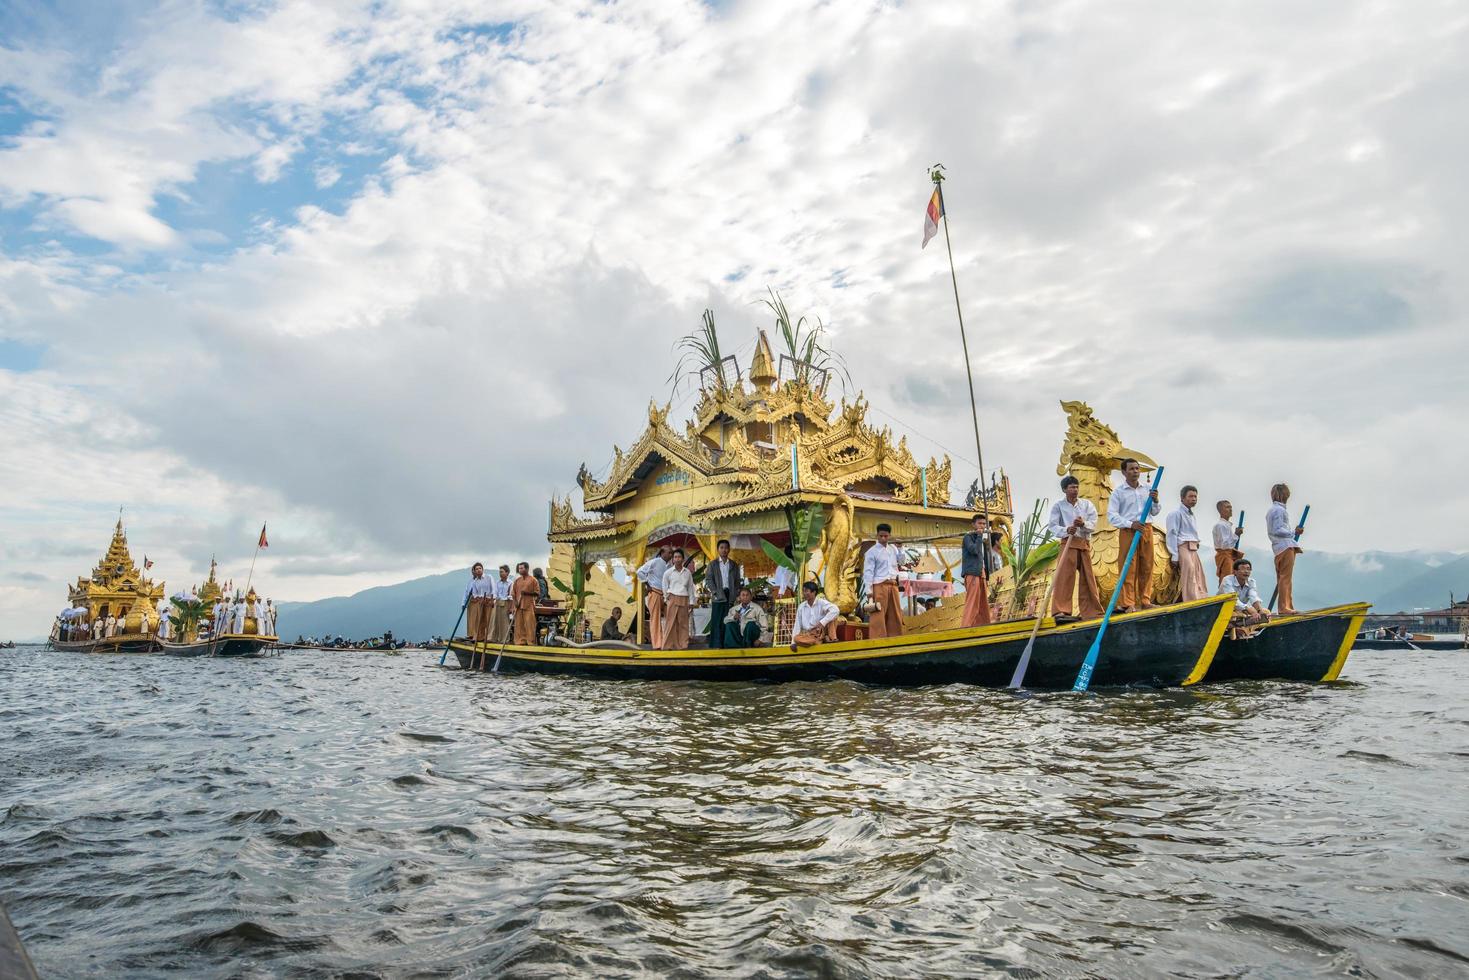 inle-lake, myanmar - 06 ottobre 2014 - il festival della pagoda di phaung daw oo al lago inle una volta all'anno viene celebrato intorno al lago. foto